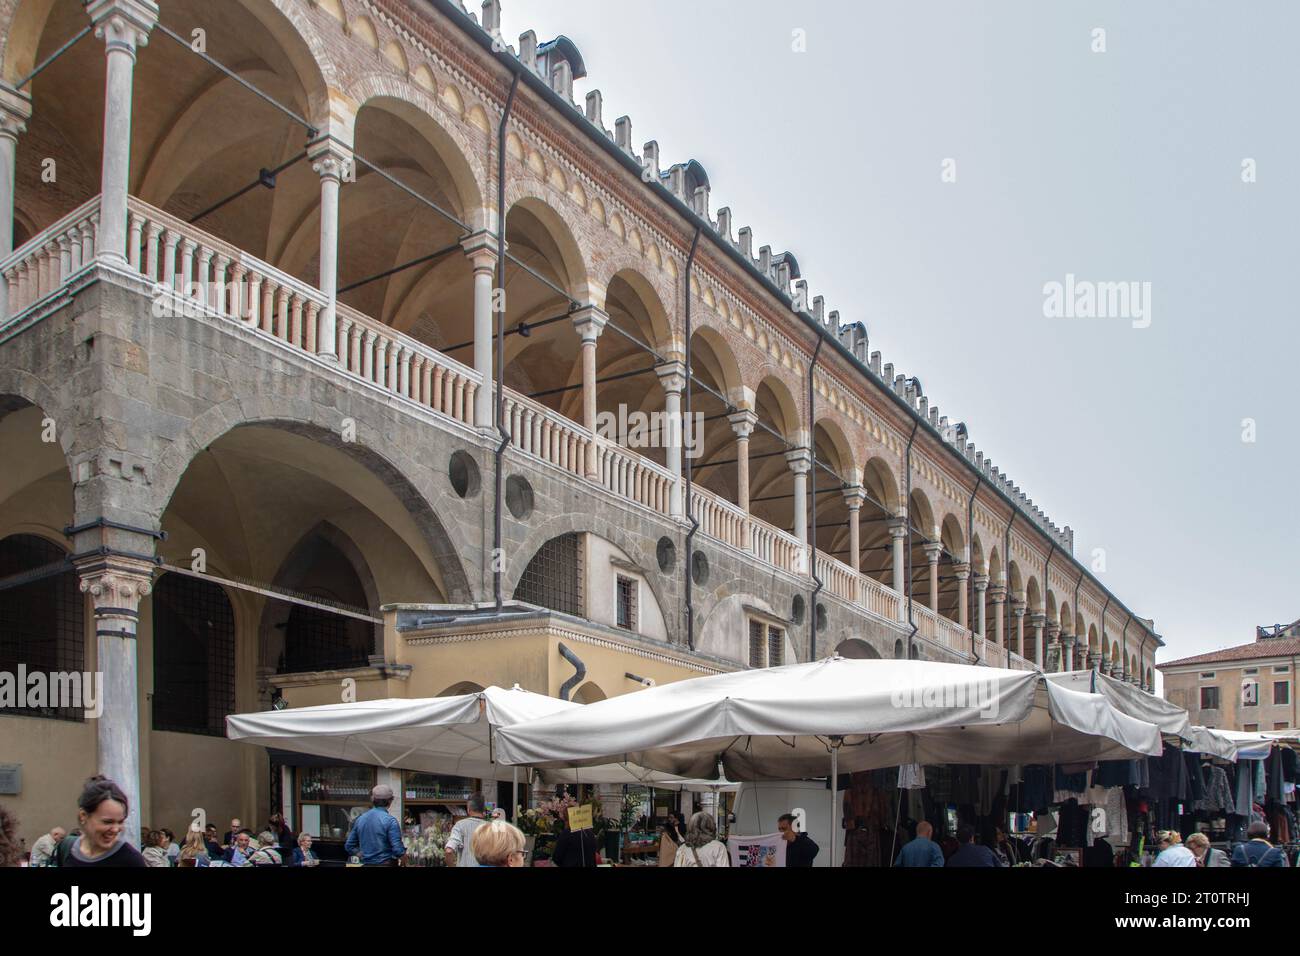 Palazzo della Ragione in the historical center of Padova Stock Photo